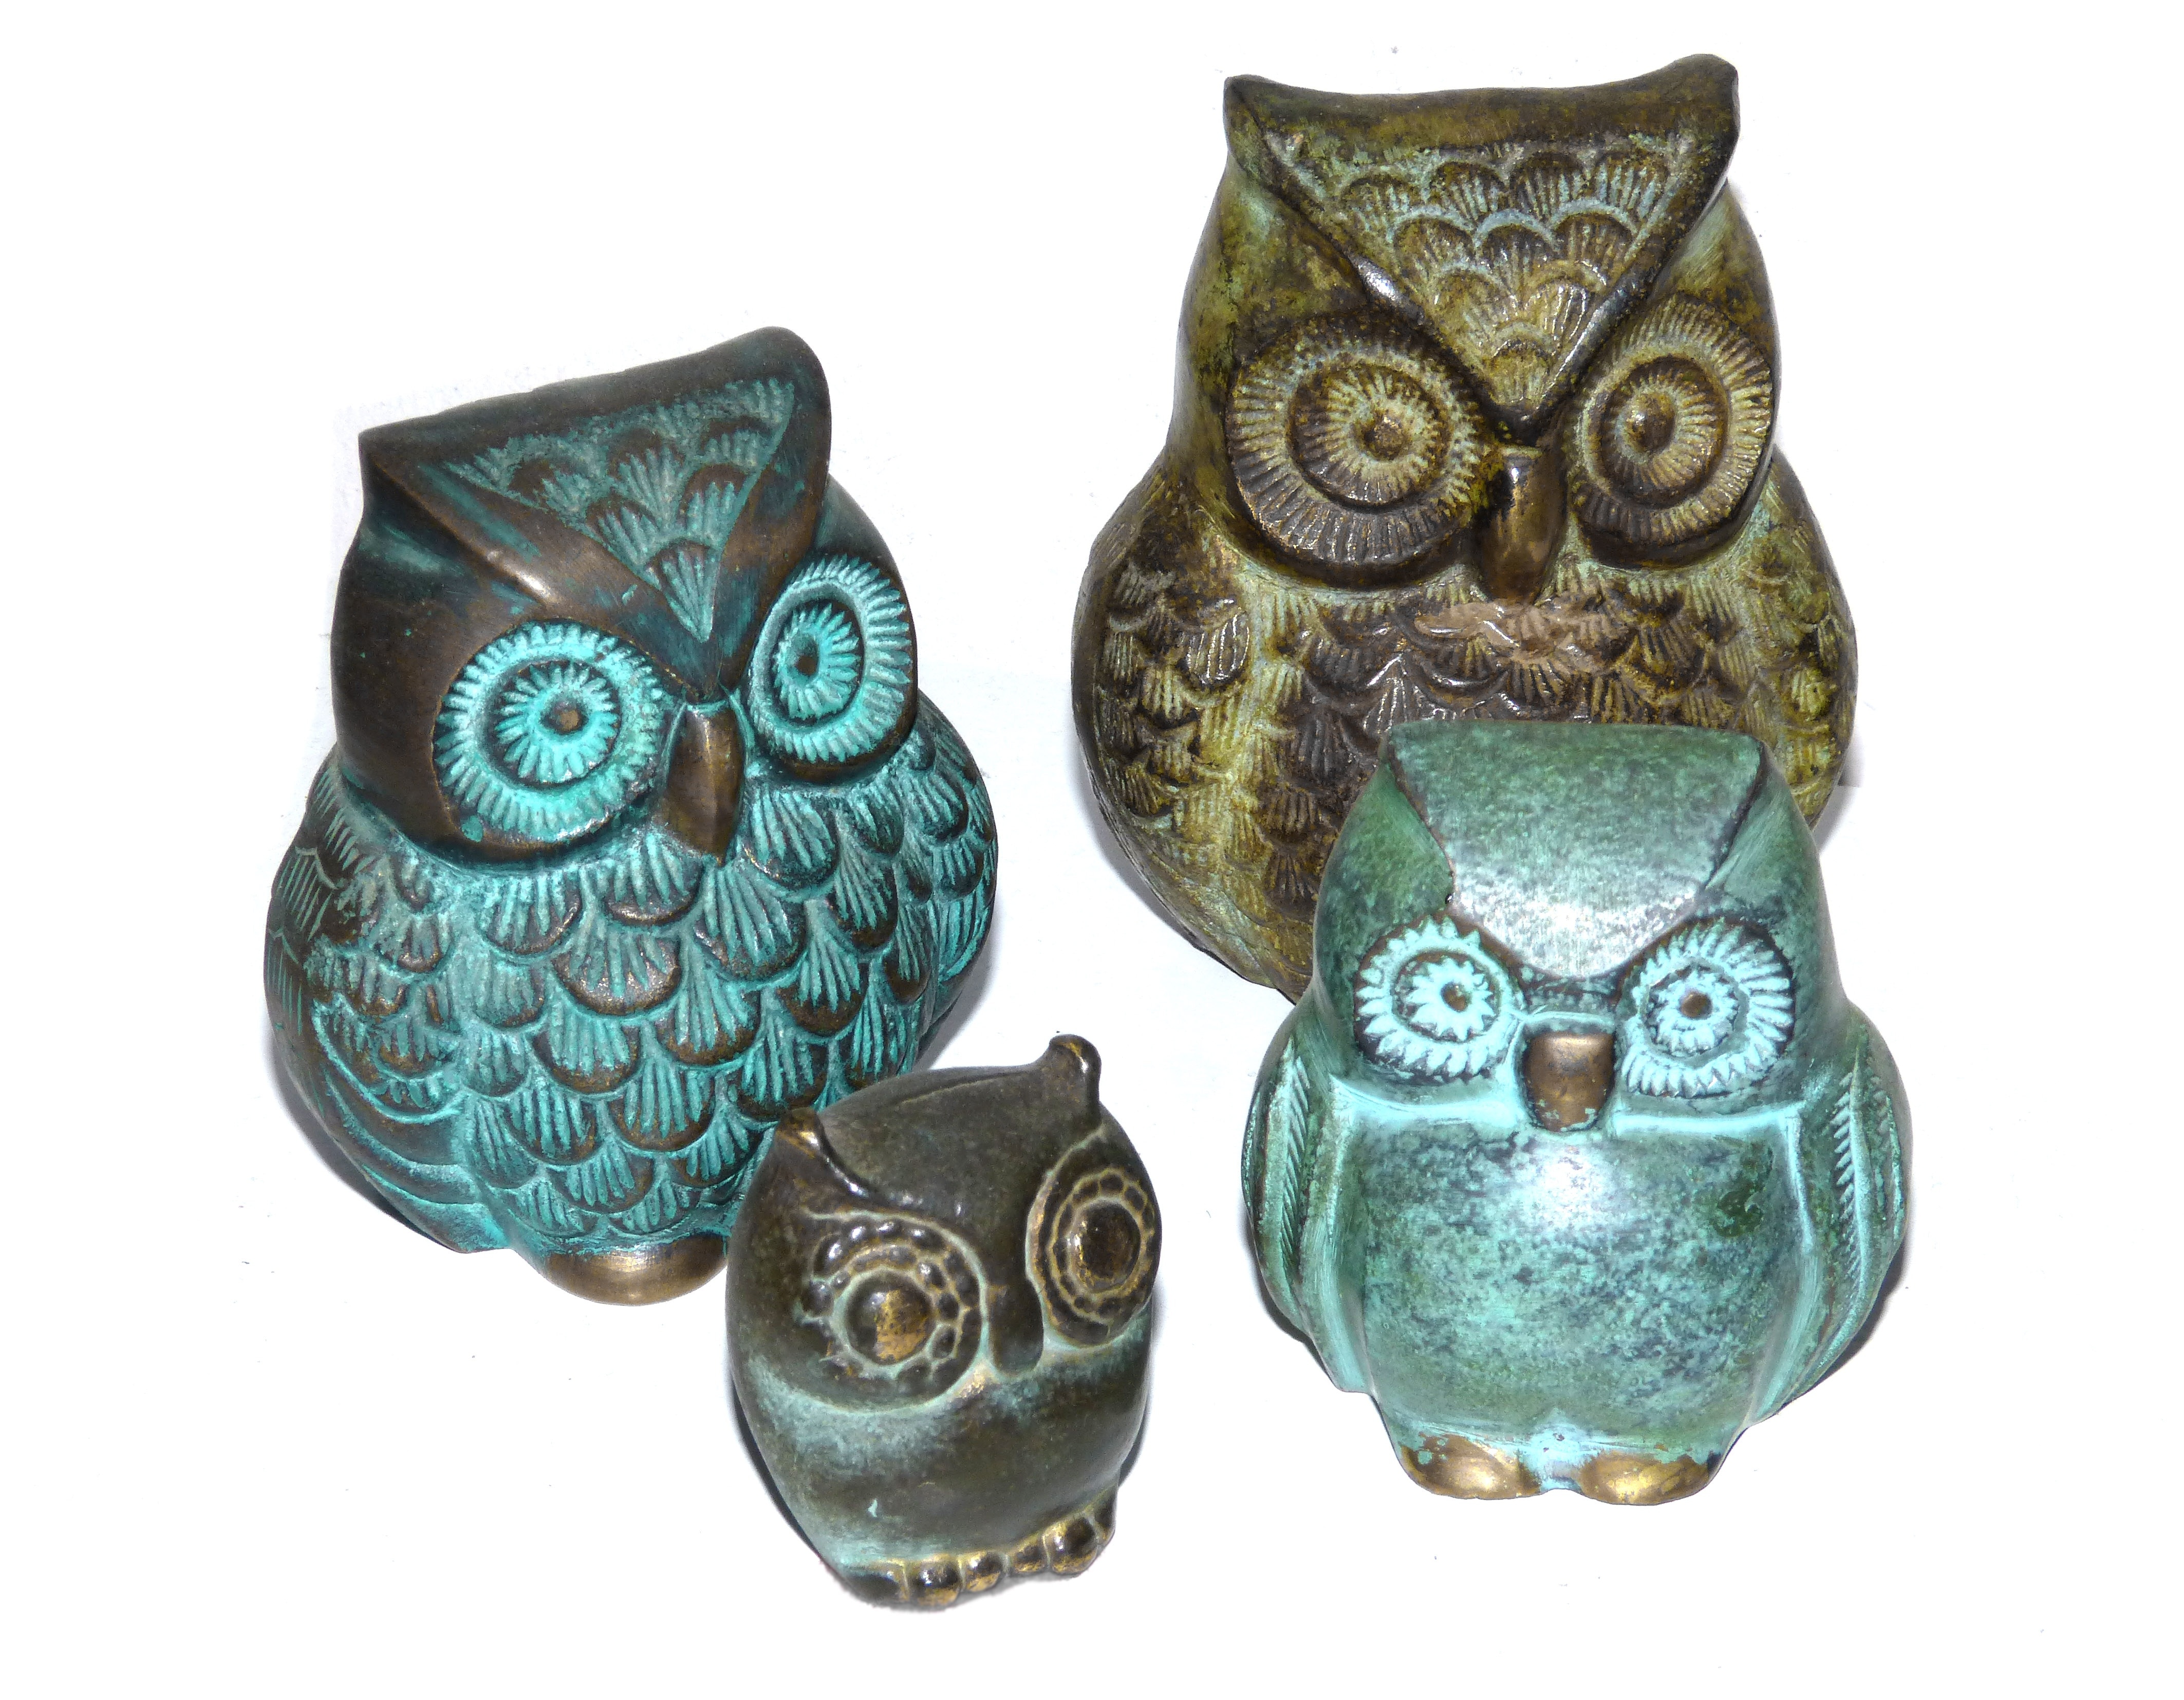 4 set of owl figurines